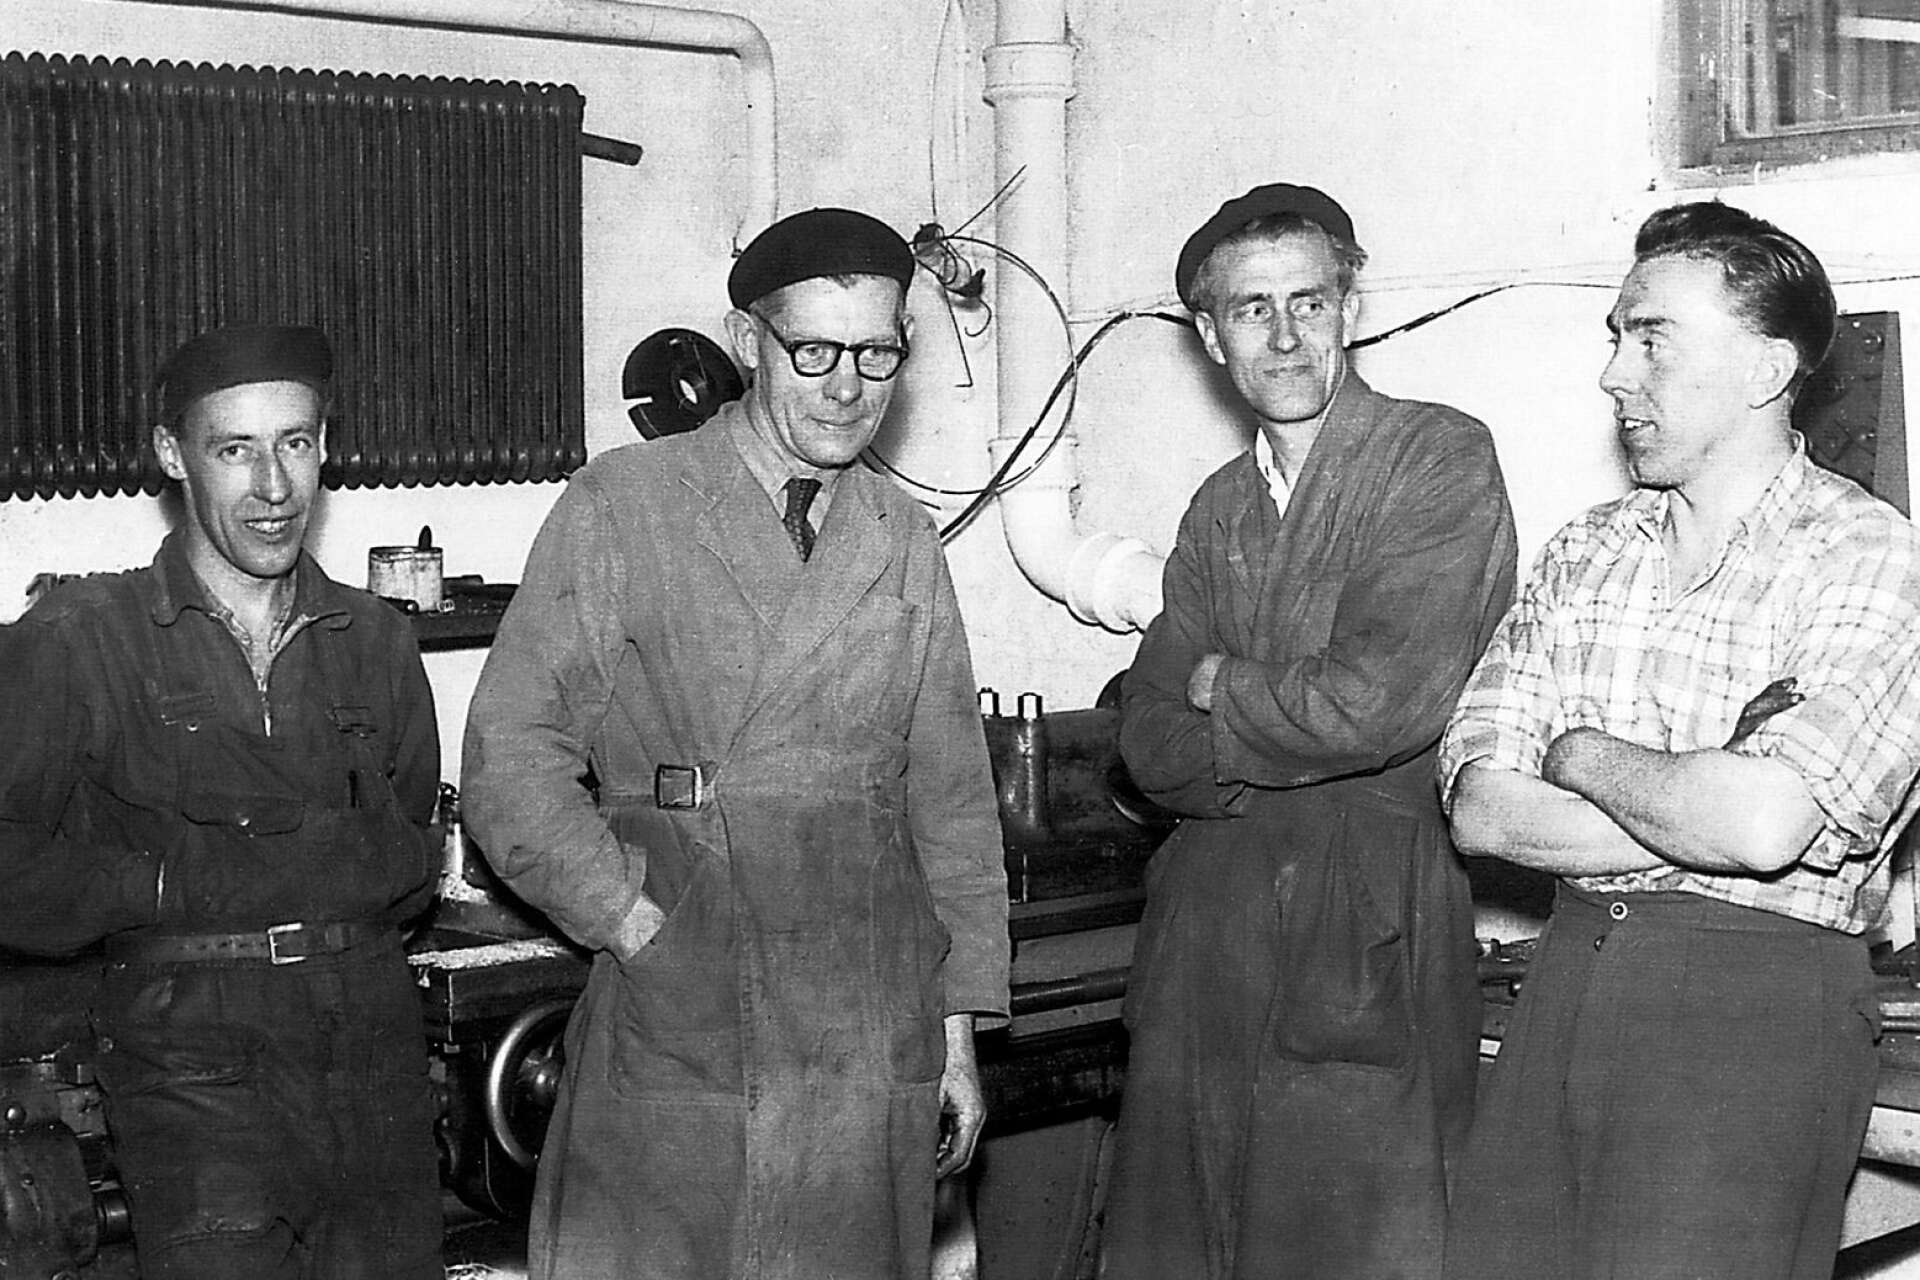 Arbetsstyrkan vid Somas i början av 1950-talet. Från vänster Allan Sehlin, Sven R. Hägg, Folke Carlén och Börje Klarin.